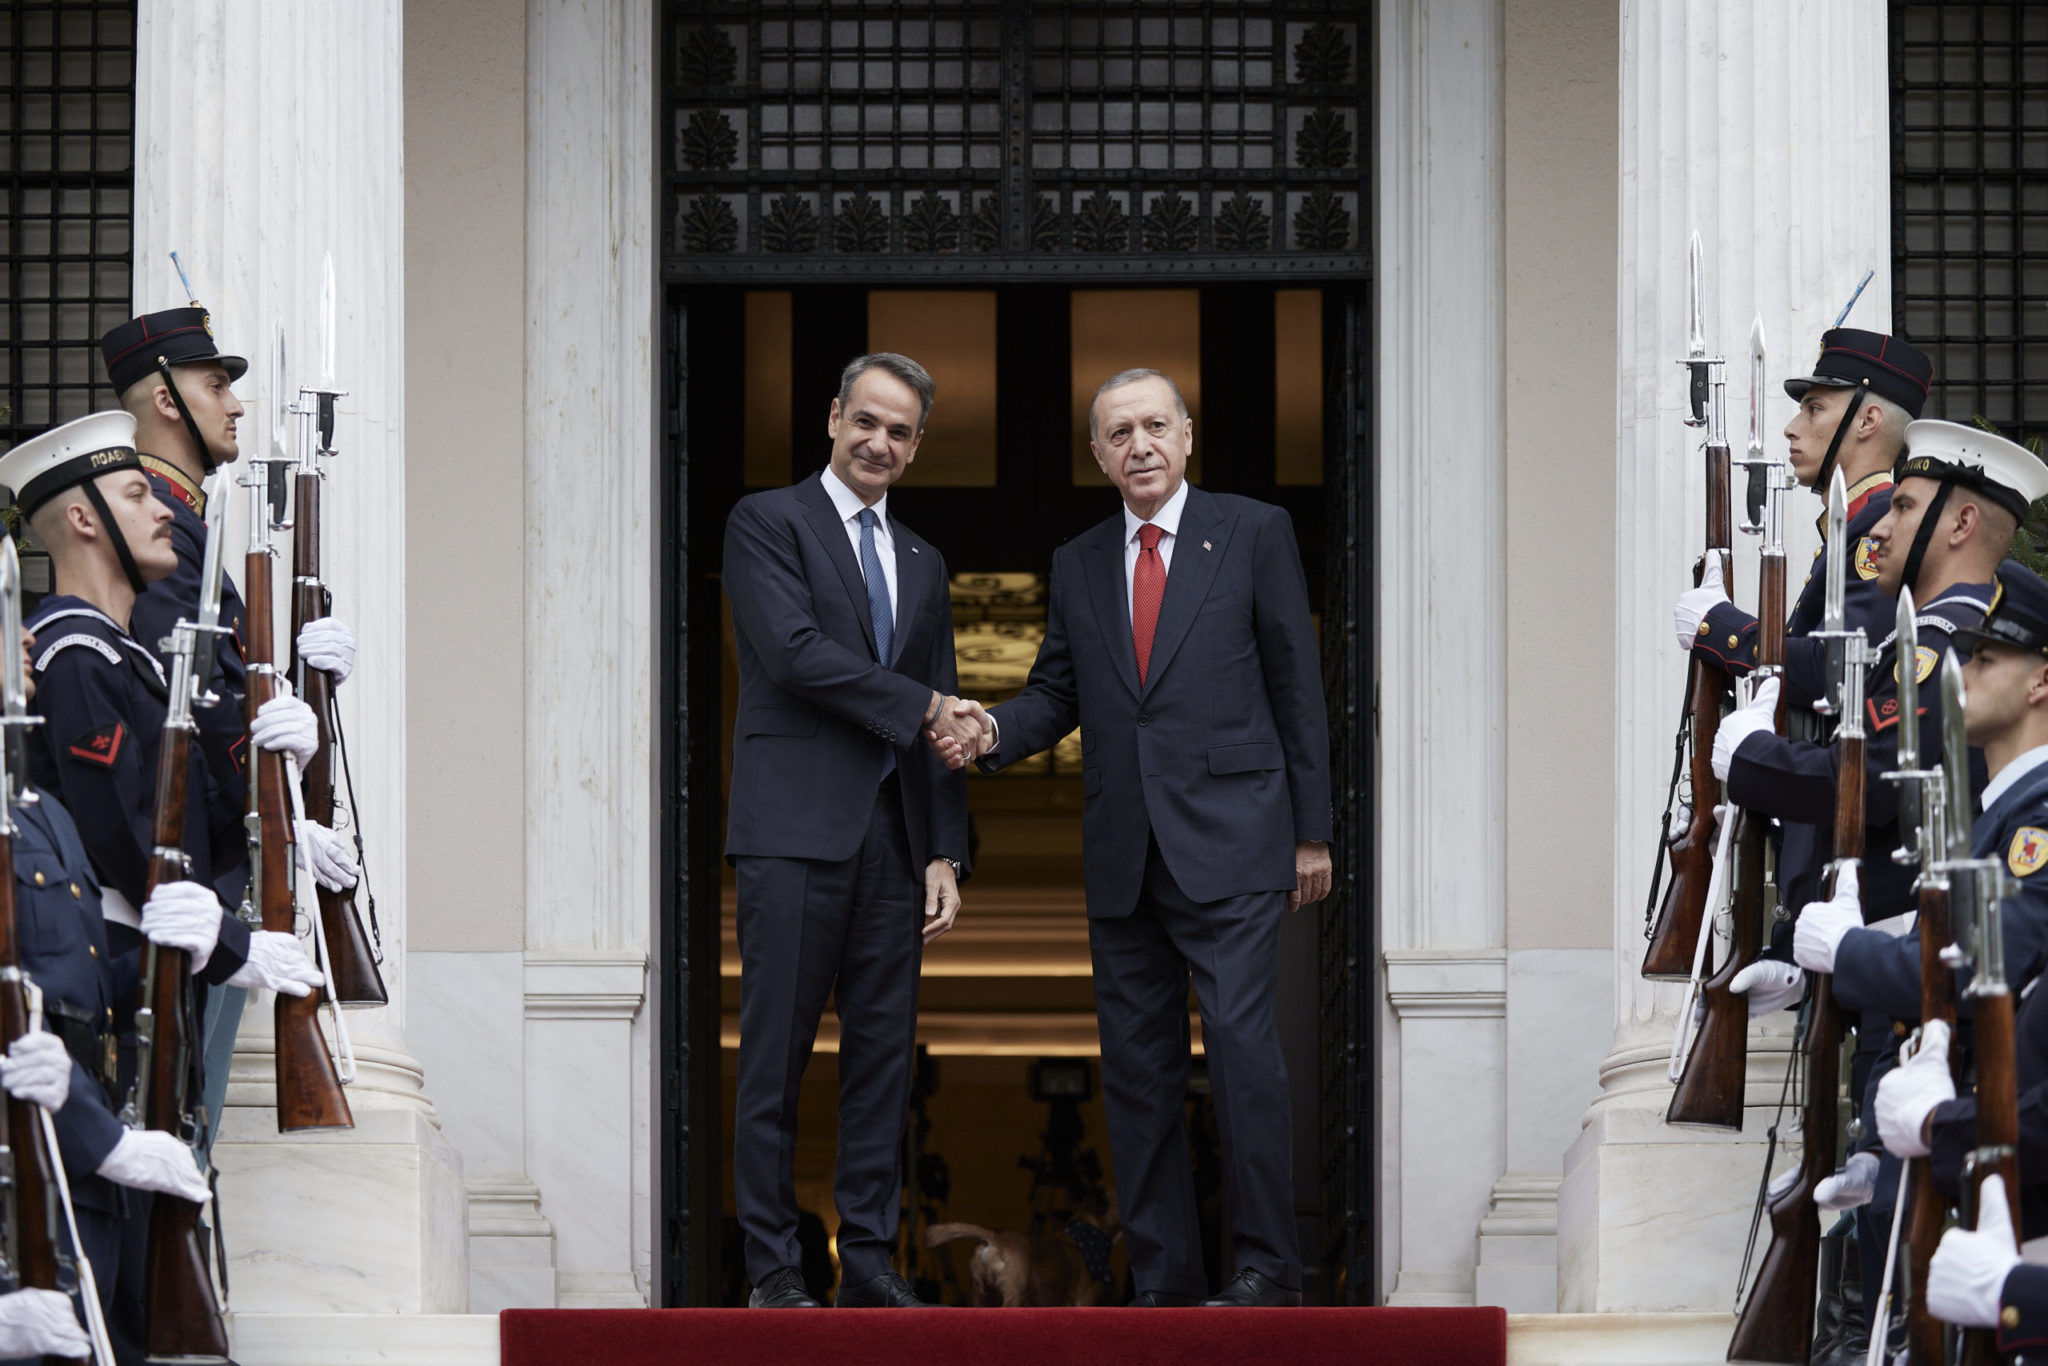 Το χρονικό της επίσκεψης Ερντογάν στην Αθήνα - Οι συμφωνίες, οι διαφωνίες και το ραντεβού την Άνοιξη στην Άγκυρα